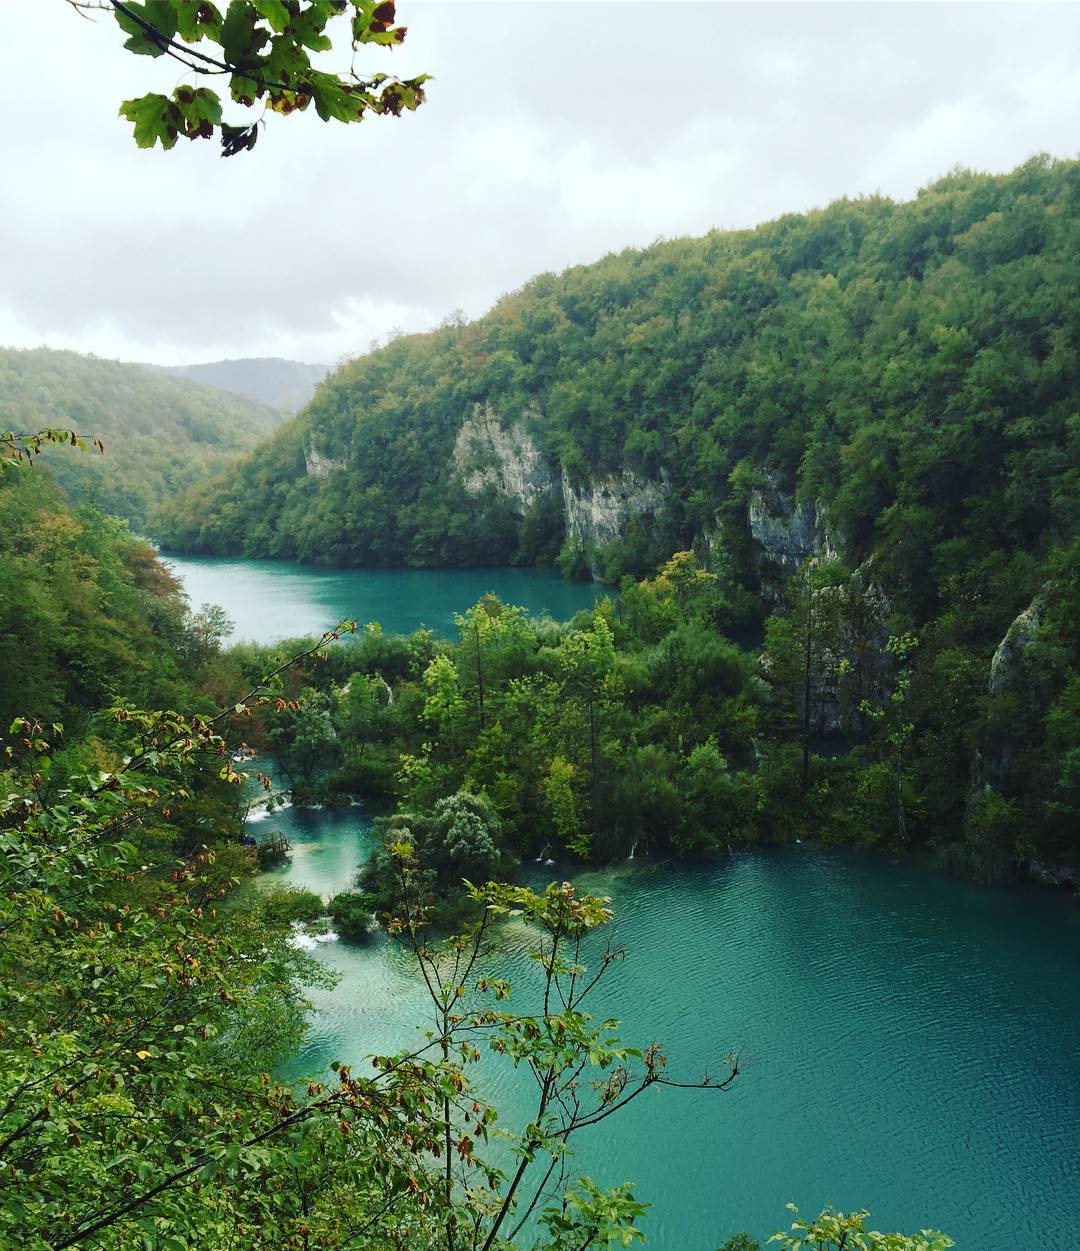 حديقة بحيرات بليتفيتش الوطنية كرواتيا